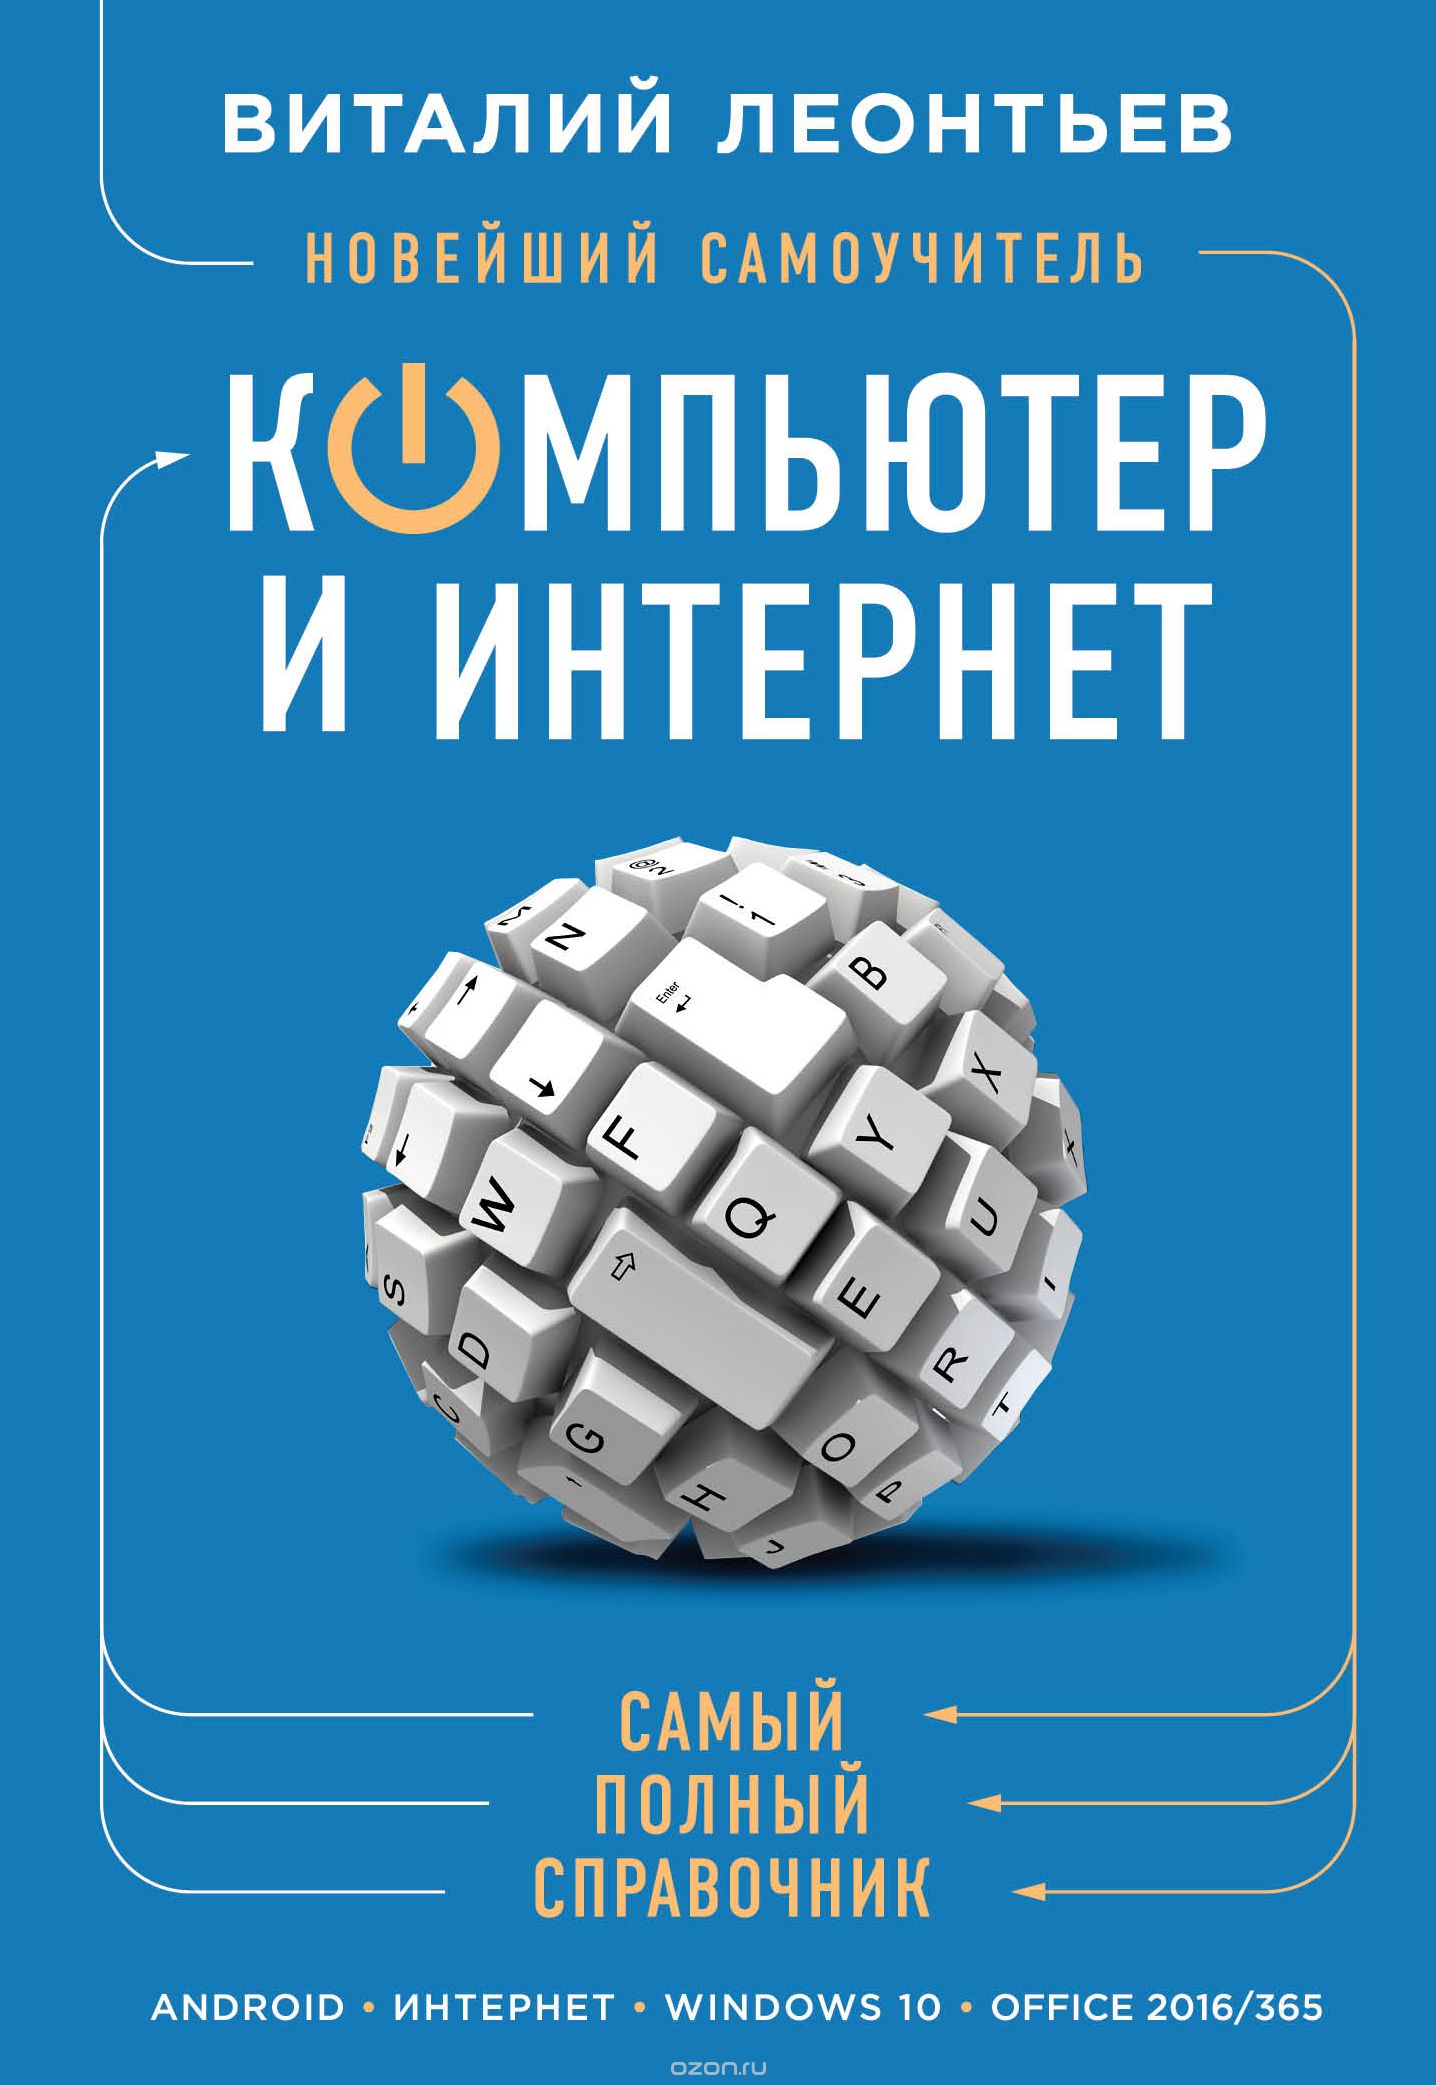 Скачать книгу "Новейший самоучитель. Компьютер и интернет, Леонтьев Виталий Петрович"